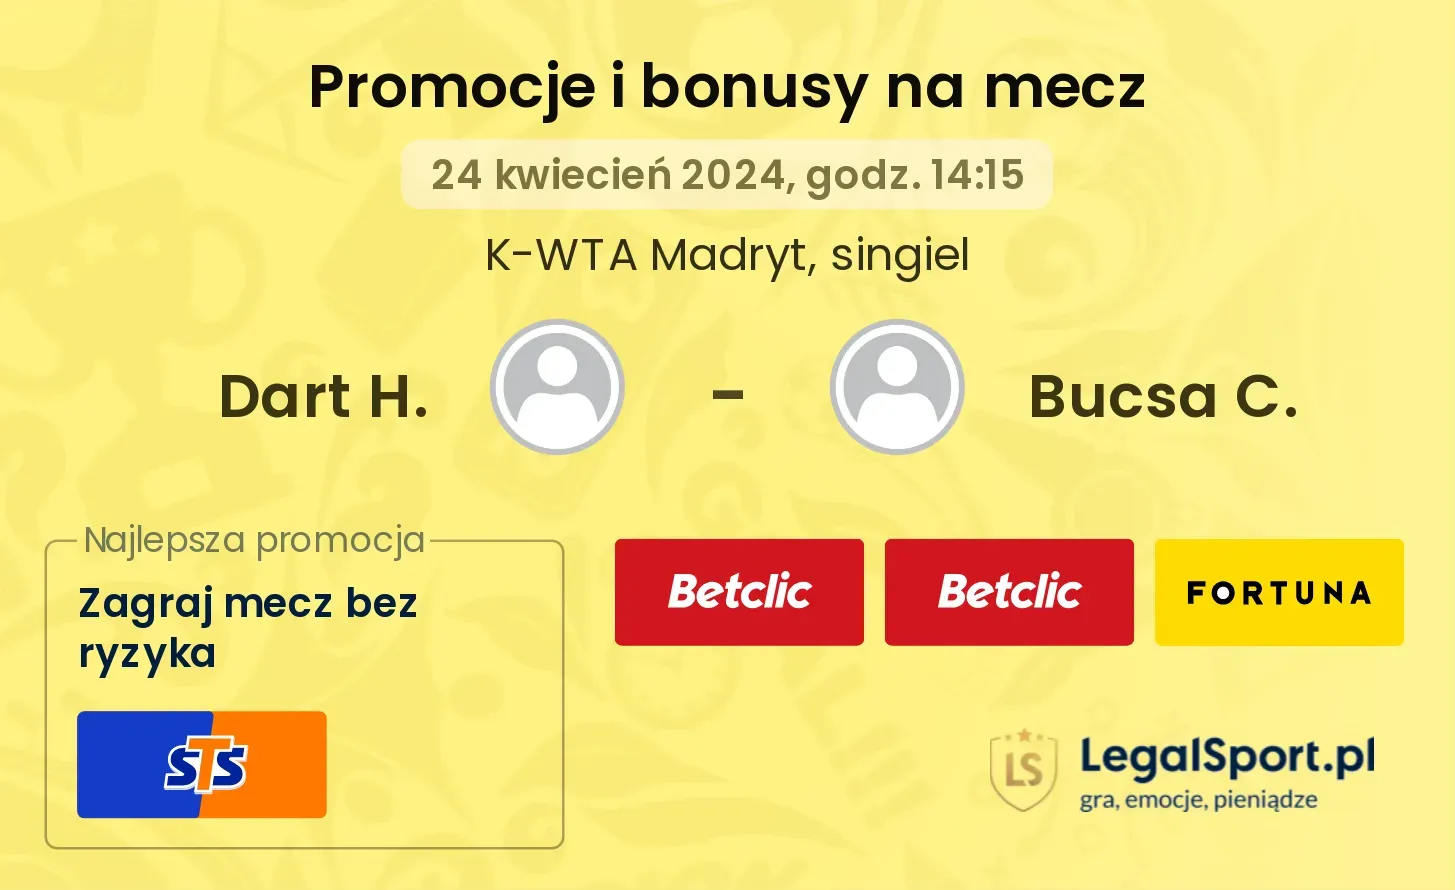 Dart H. - Bucsa C. promocje bonusy na mecz